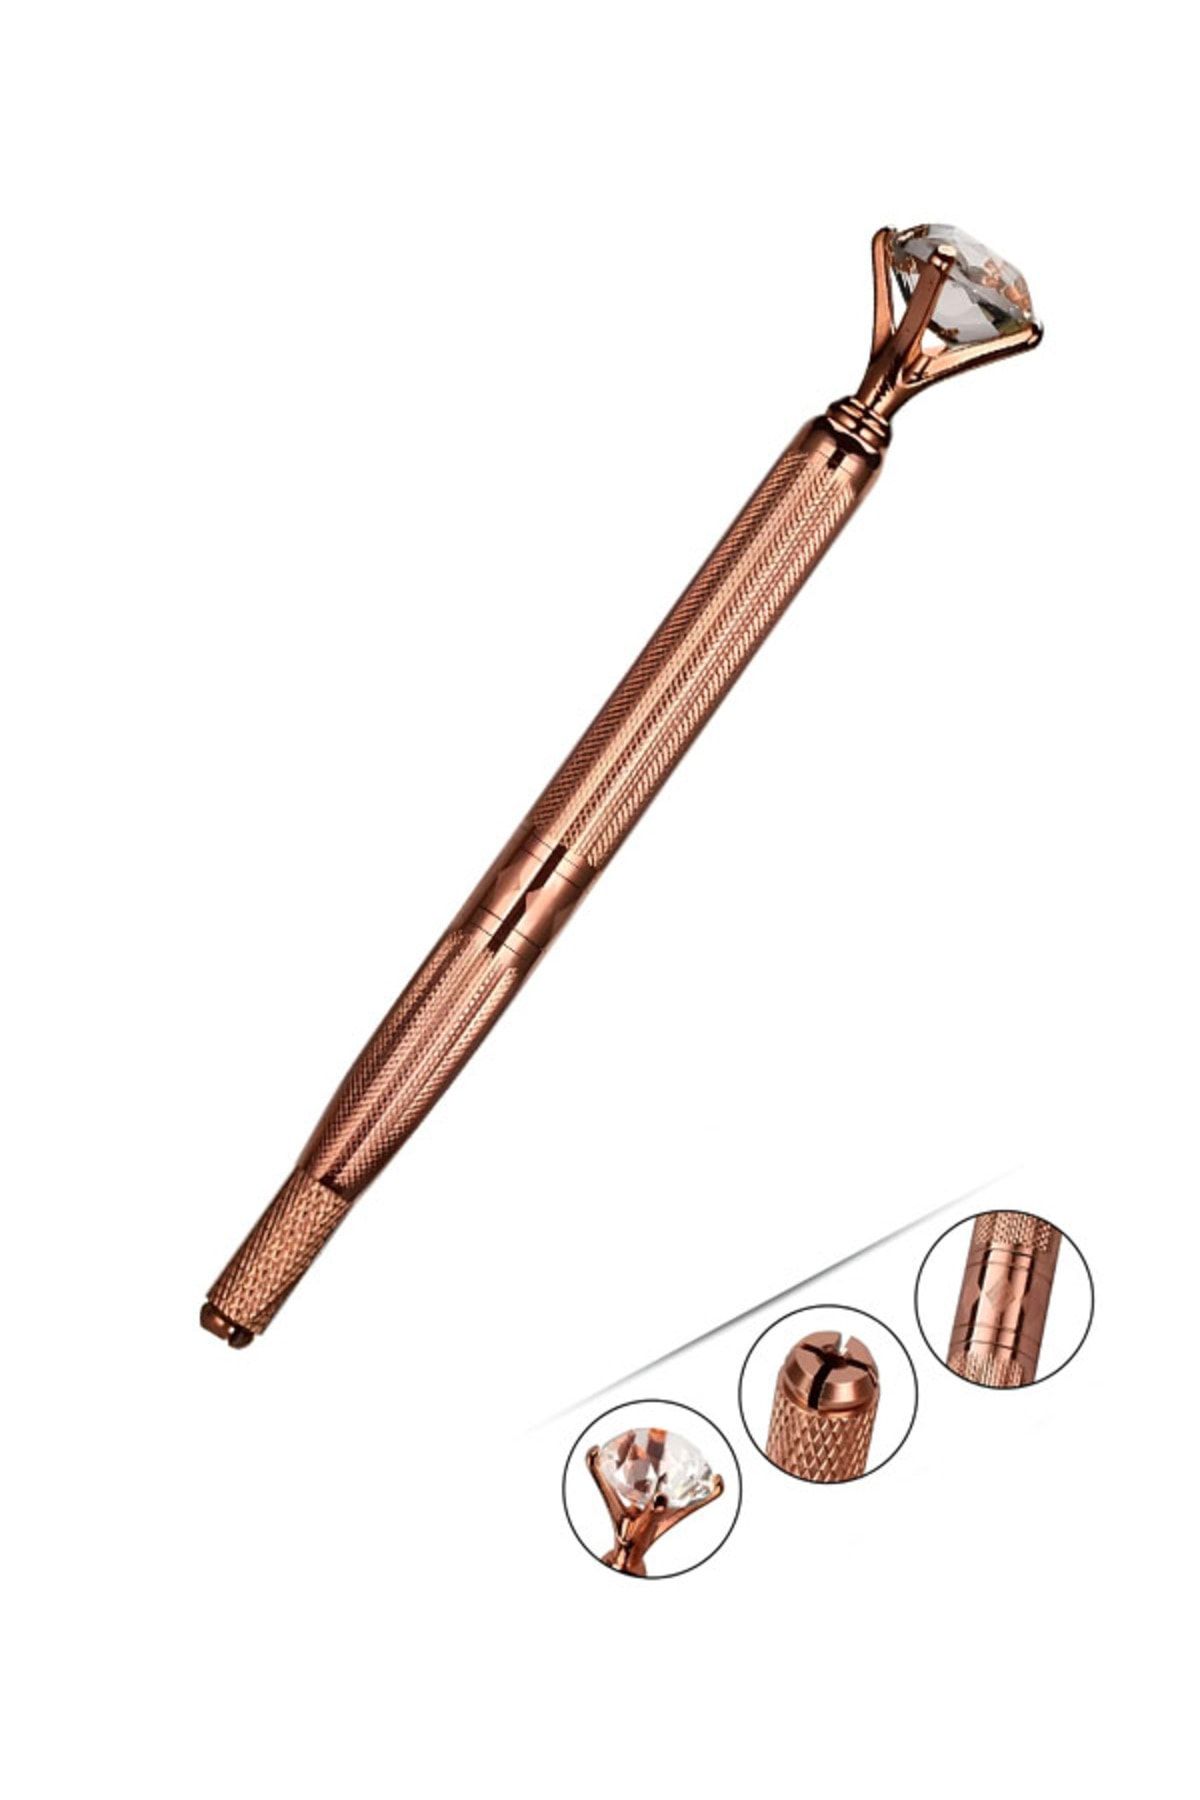 ARMONİKONYA Microblading Kalem Ve Kalıcı Kaş Kalem Makyaj Kıl Tekniği Manuel Elmas Topuz Kalem